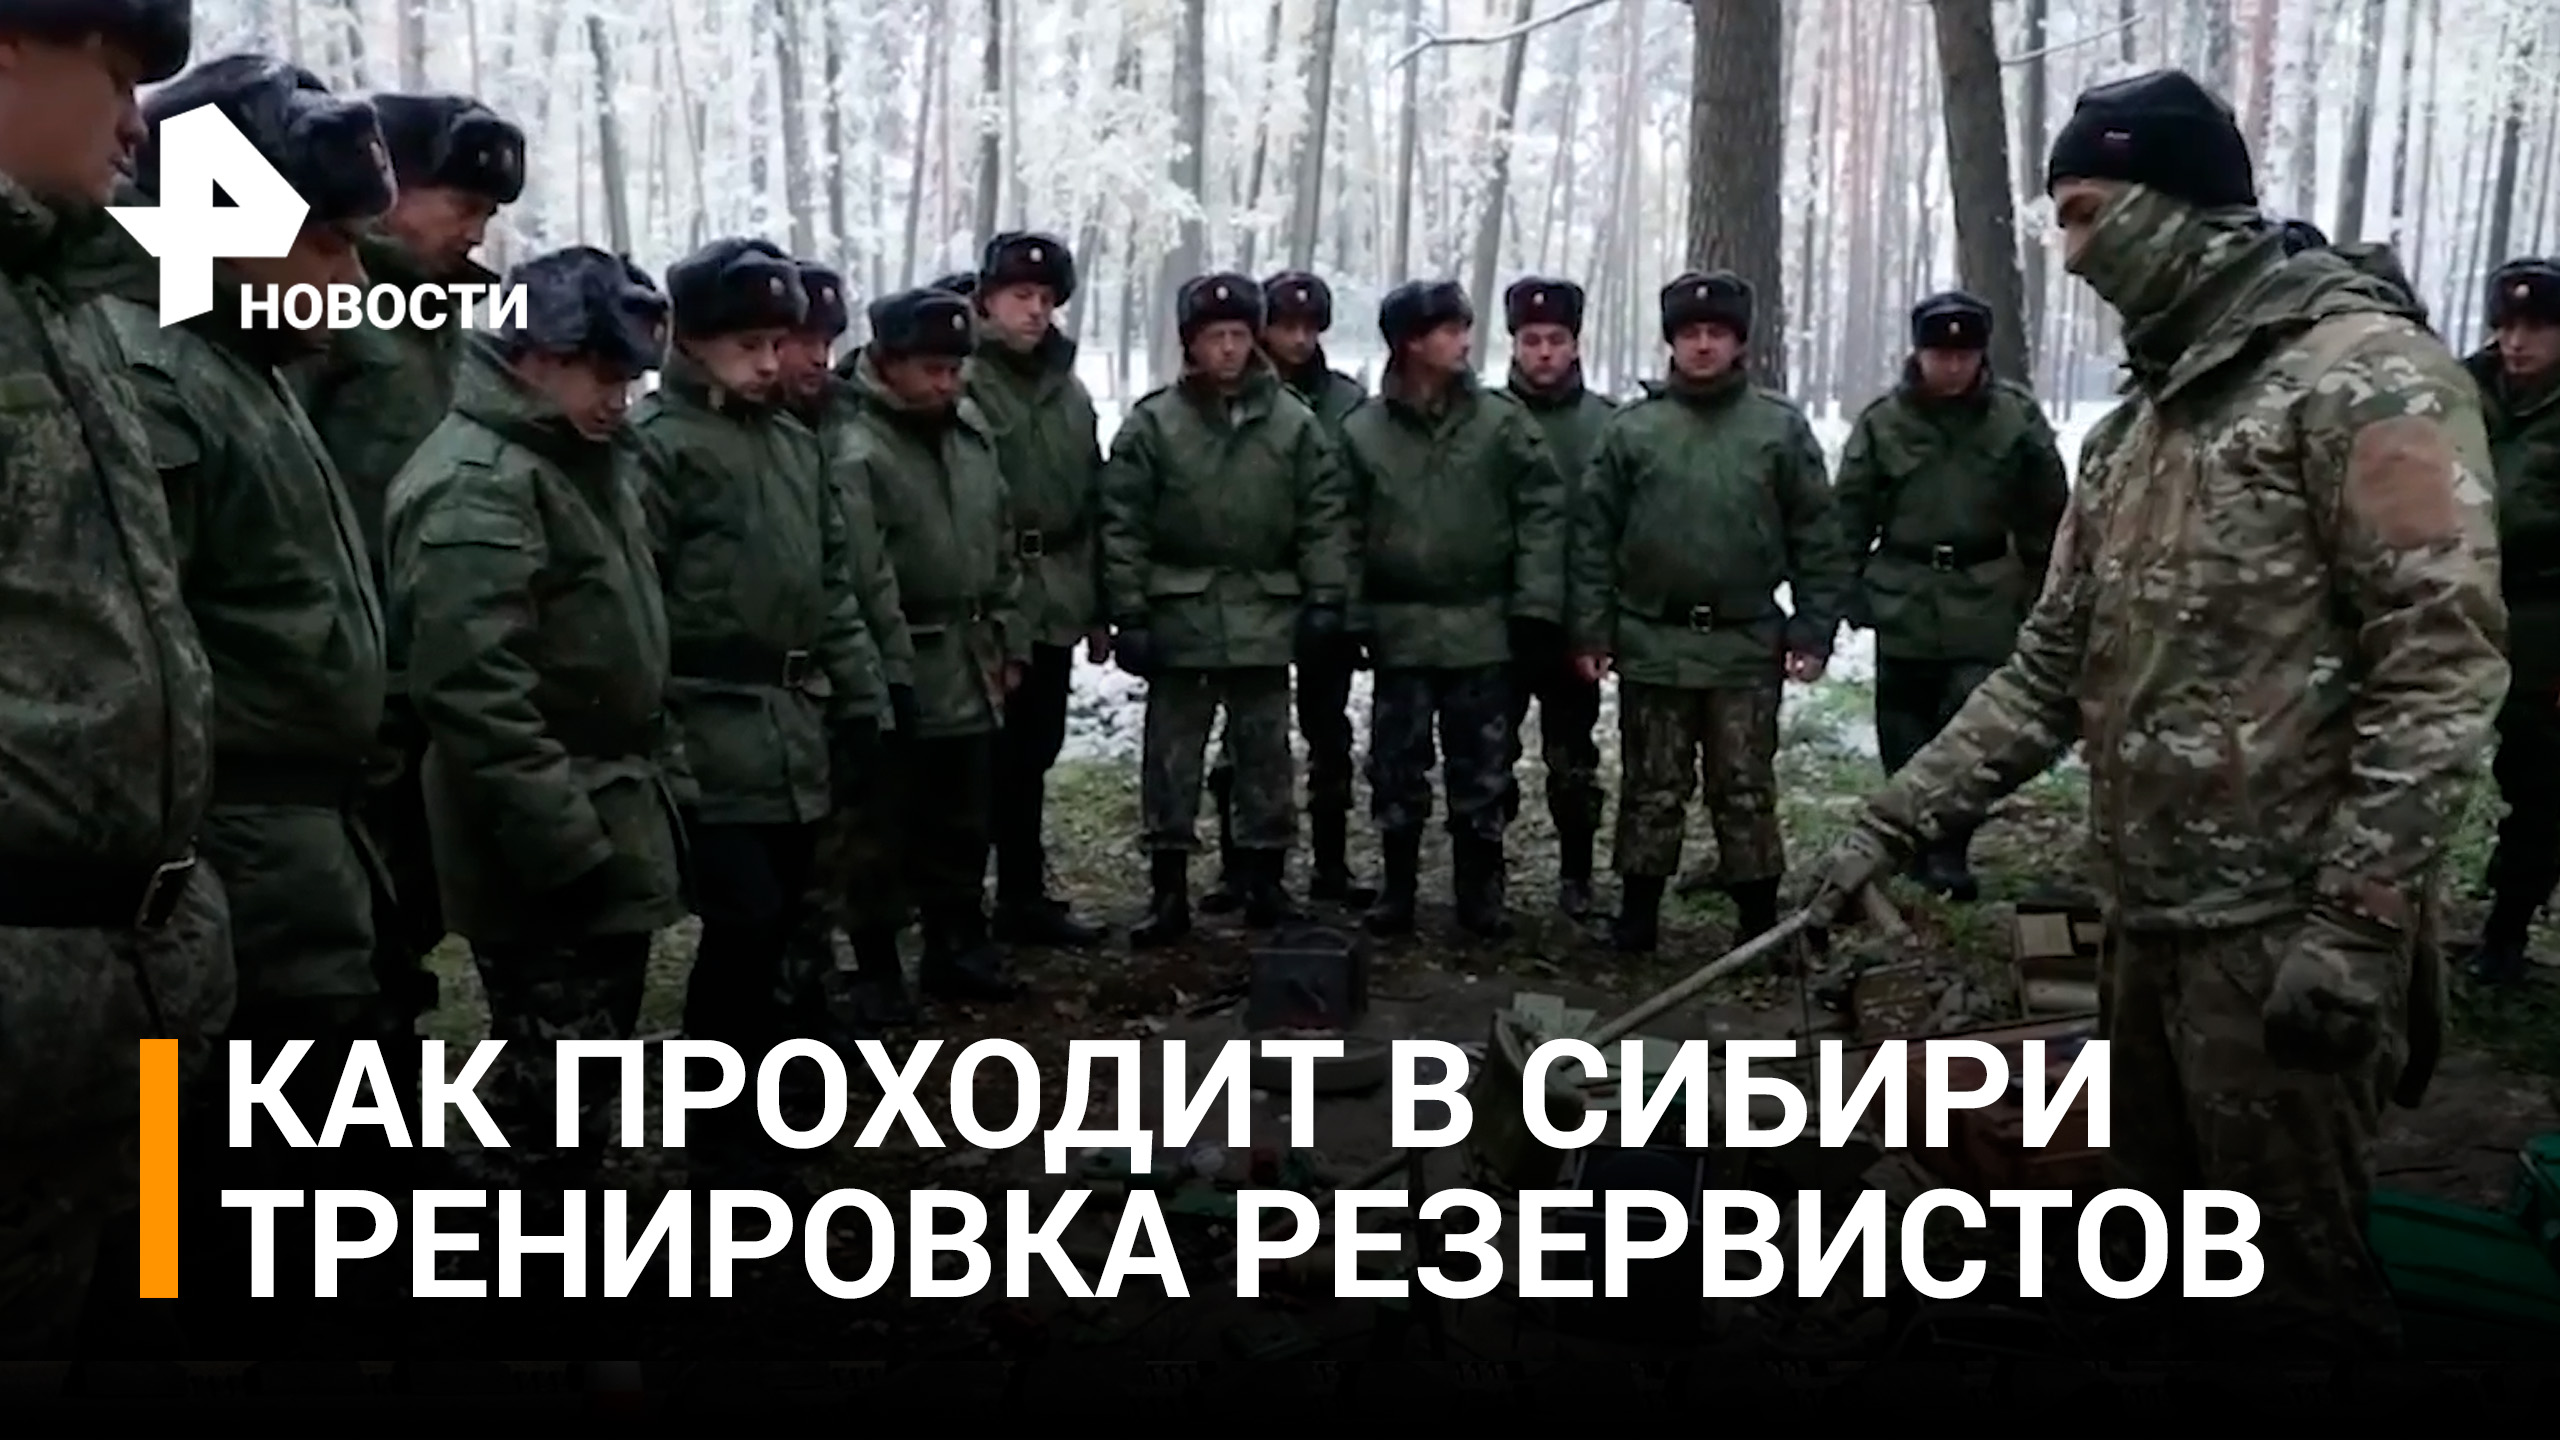 В регионах России проходит обучение резервистов, призванных в ходе частичной мобилизации / РЕН